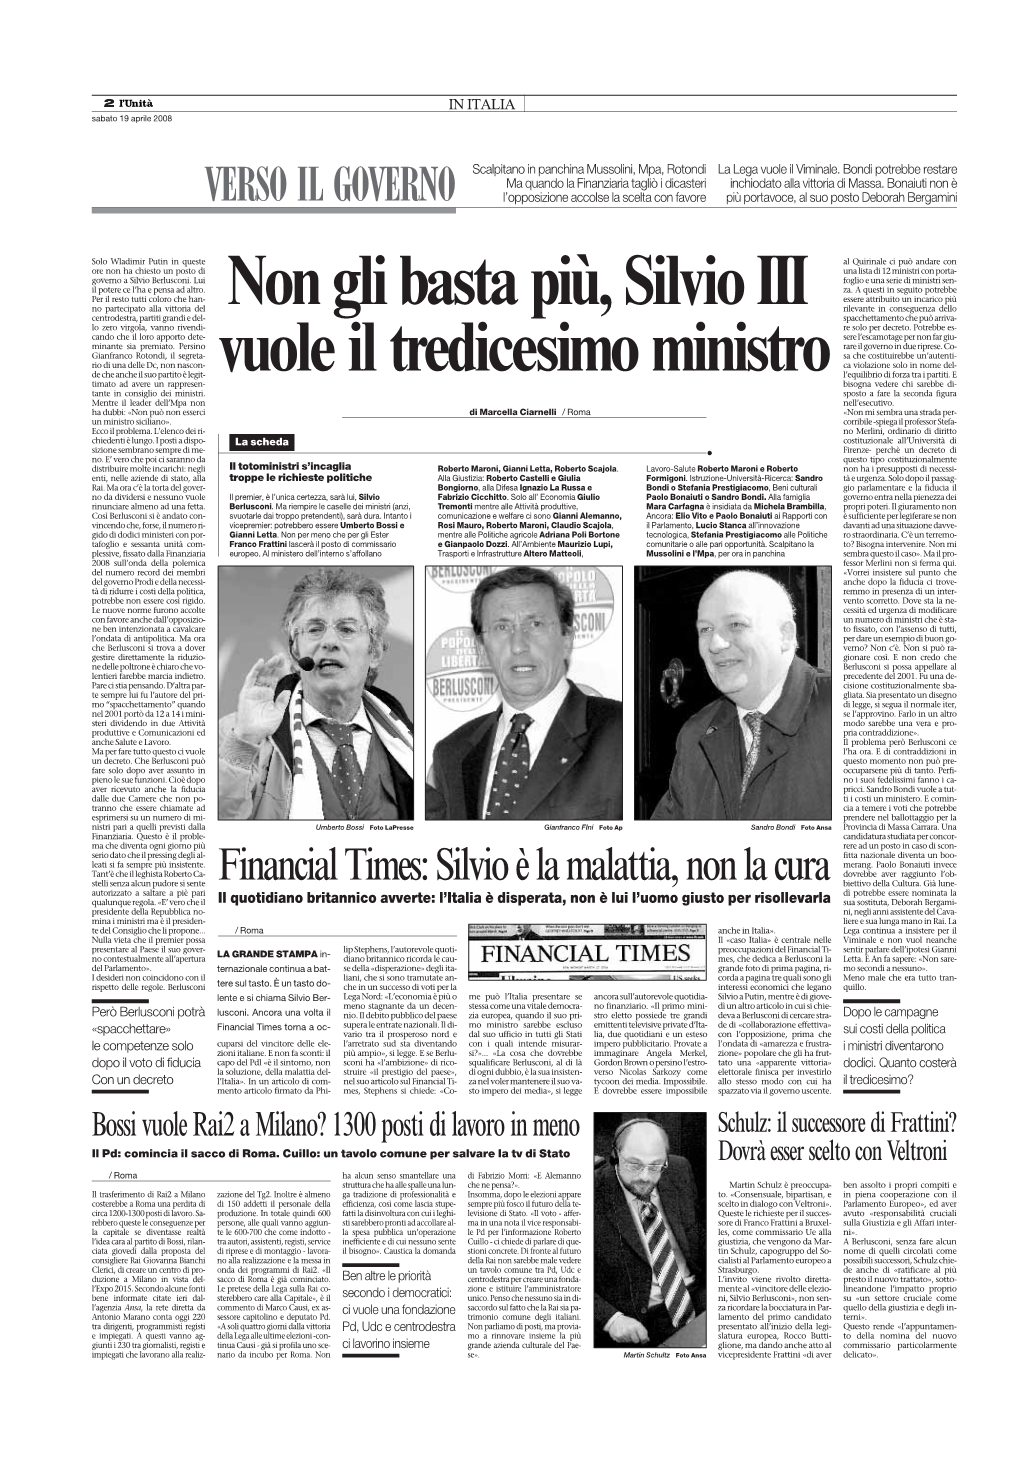 Financialtimes:Silvioèlamalattia,Nonlacura VERSO IL GOVERNO